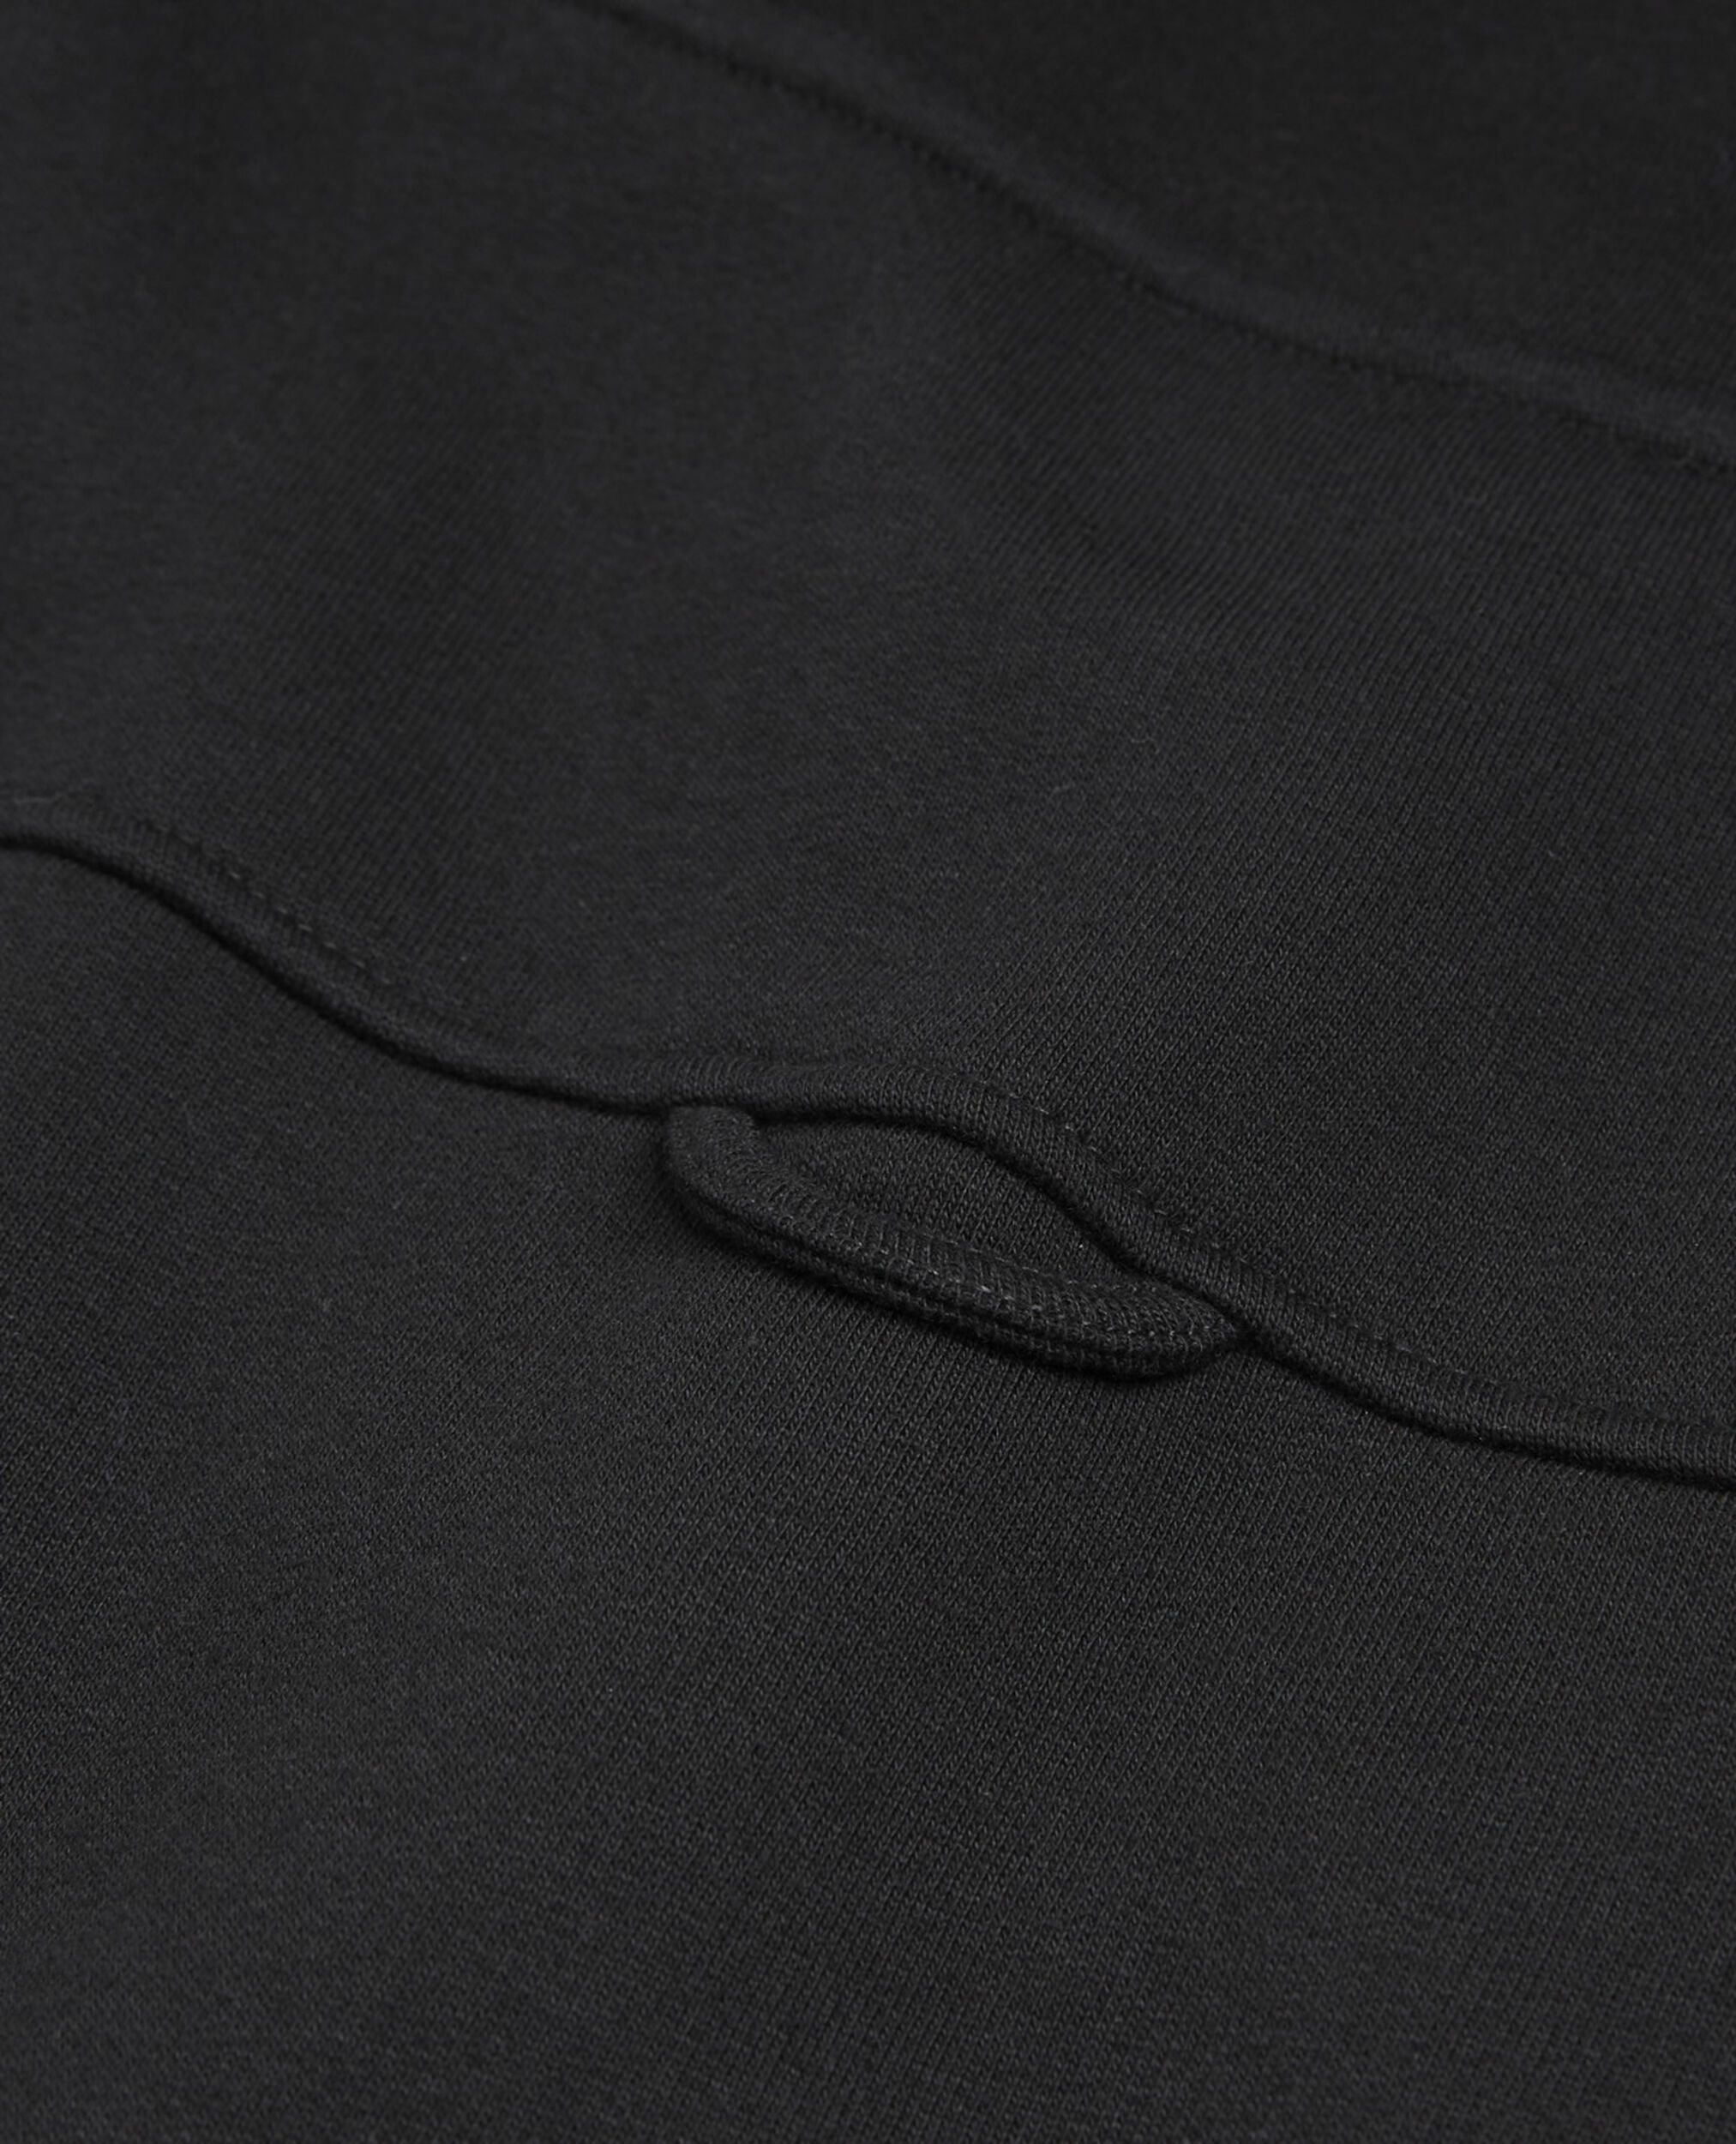 Sweat coton noir à col camionneur zippé, BLACK, hi-res image number null